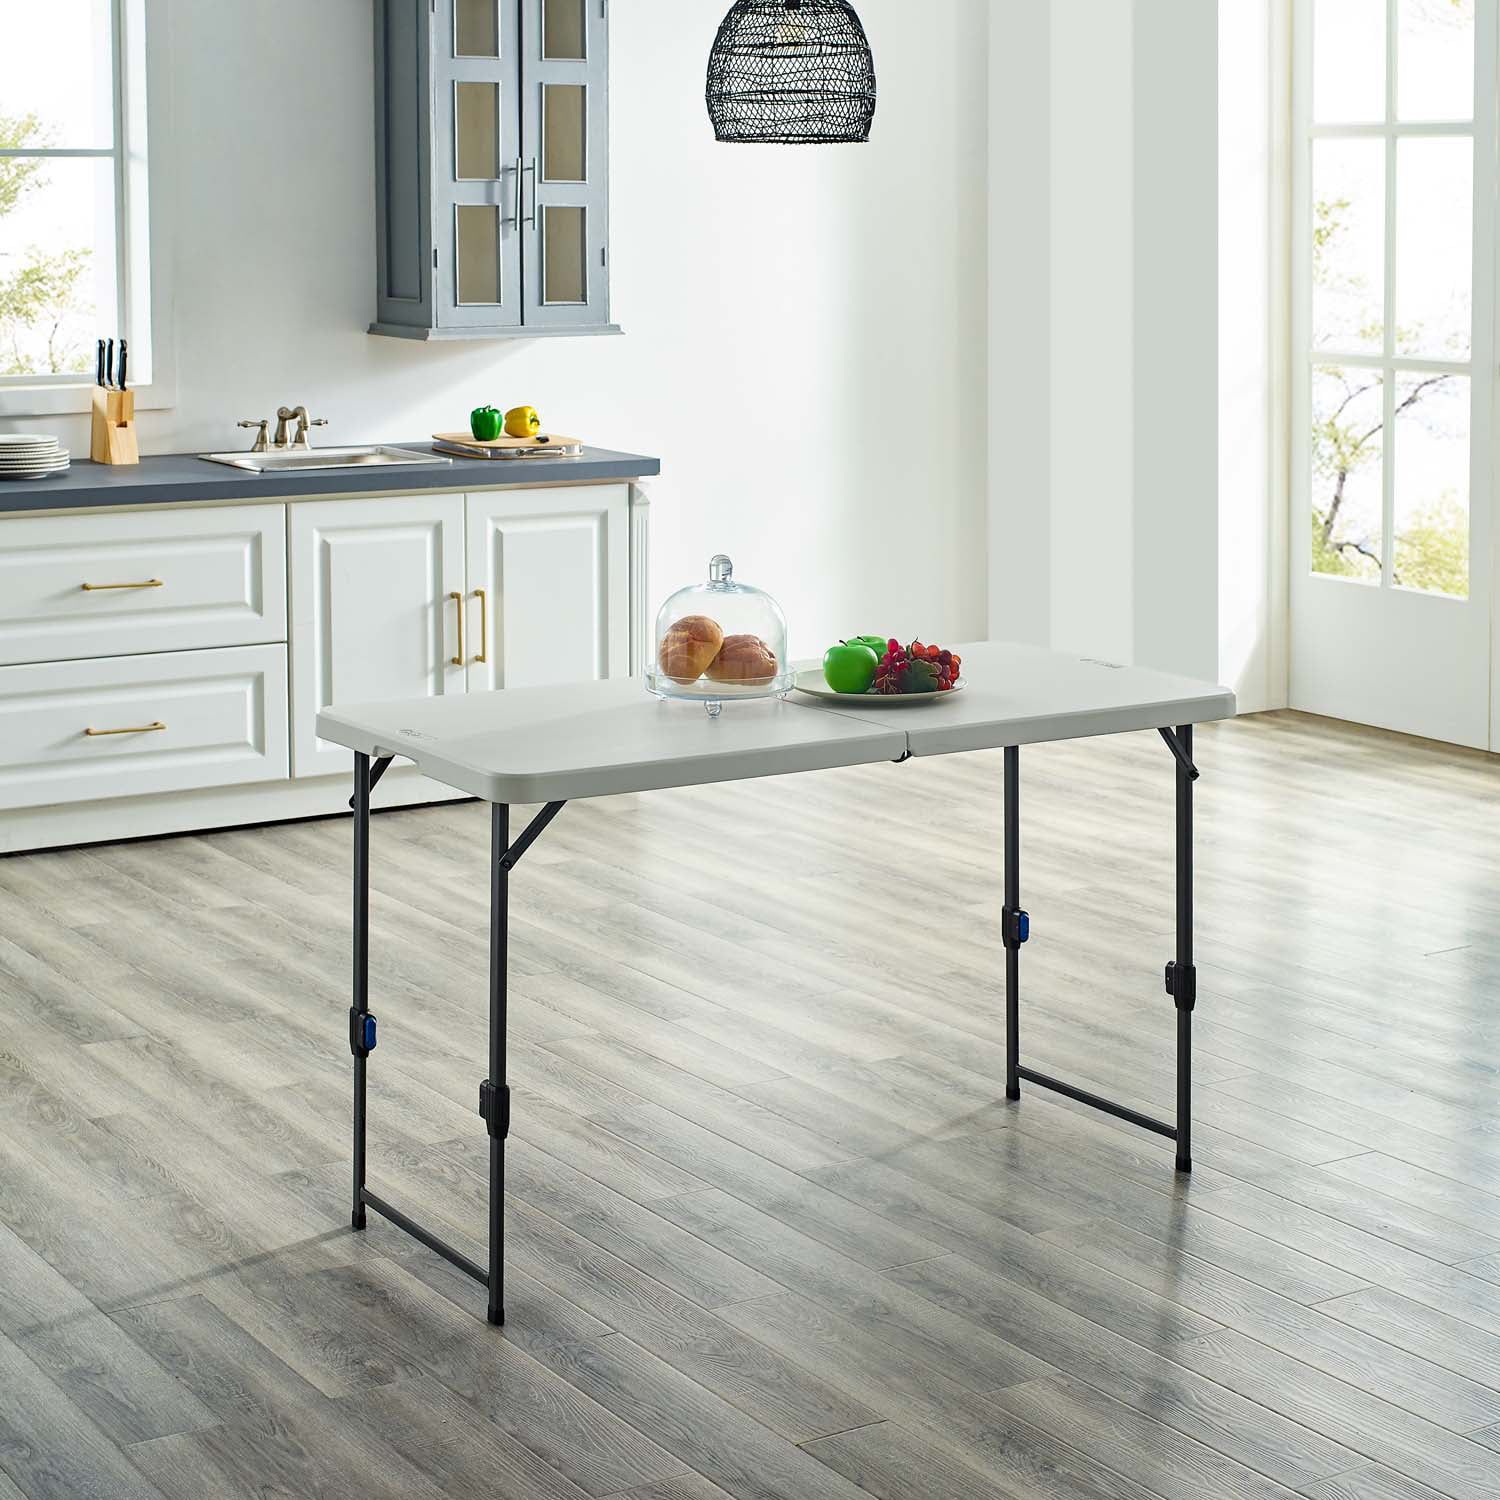 Mainstays 4' Adjustable Height Folding Table, White Granite - Walmart.com | Walmart (US)